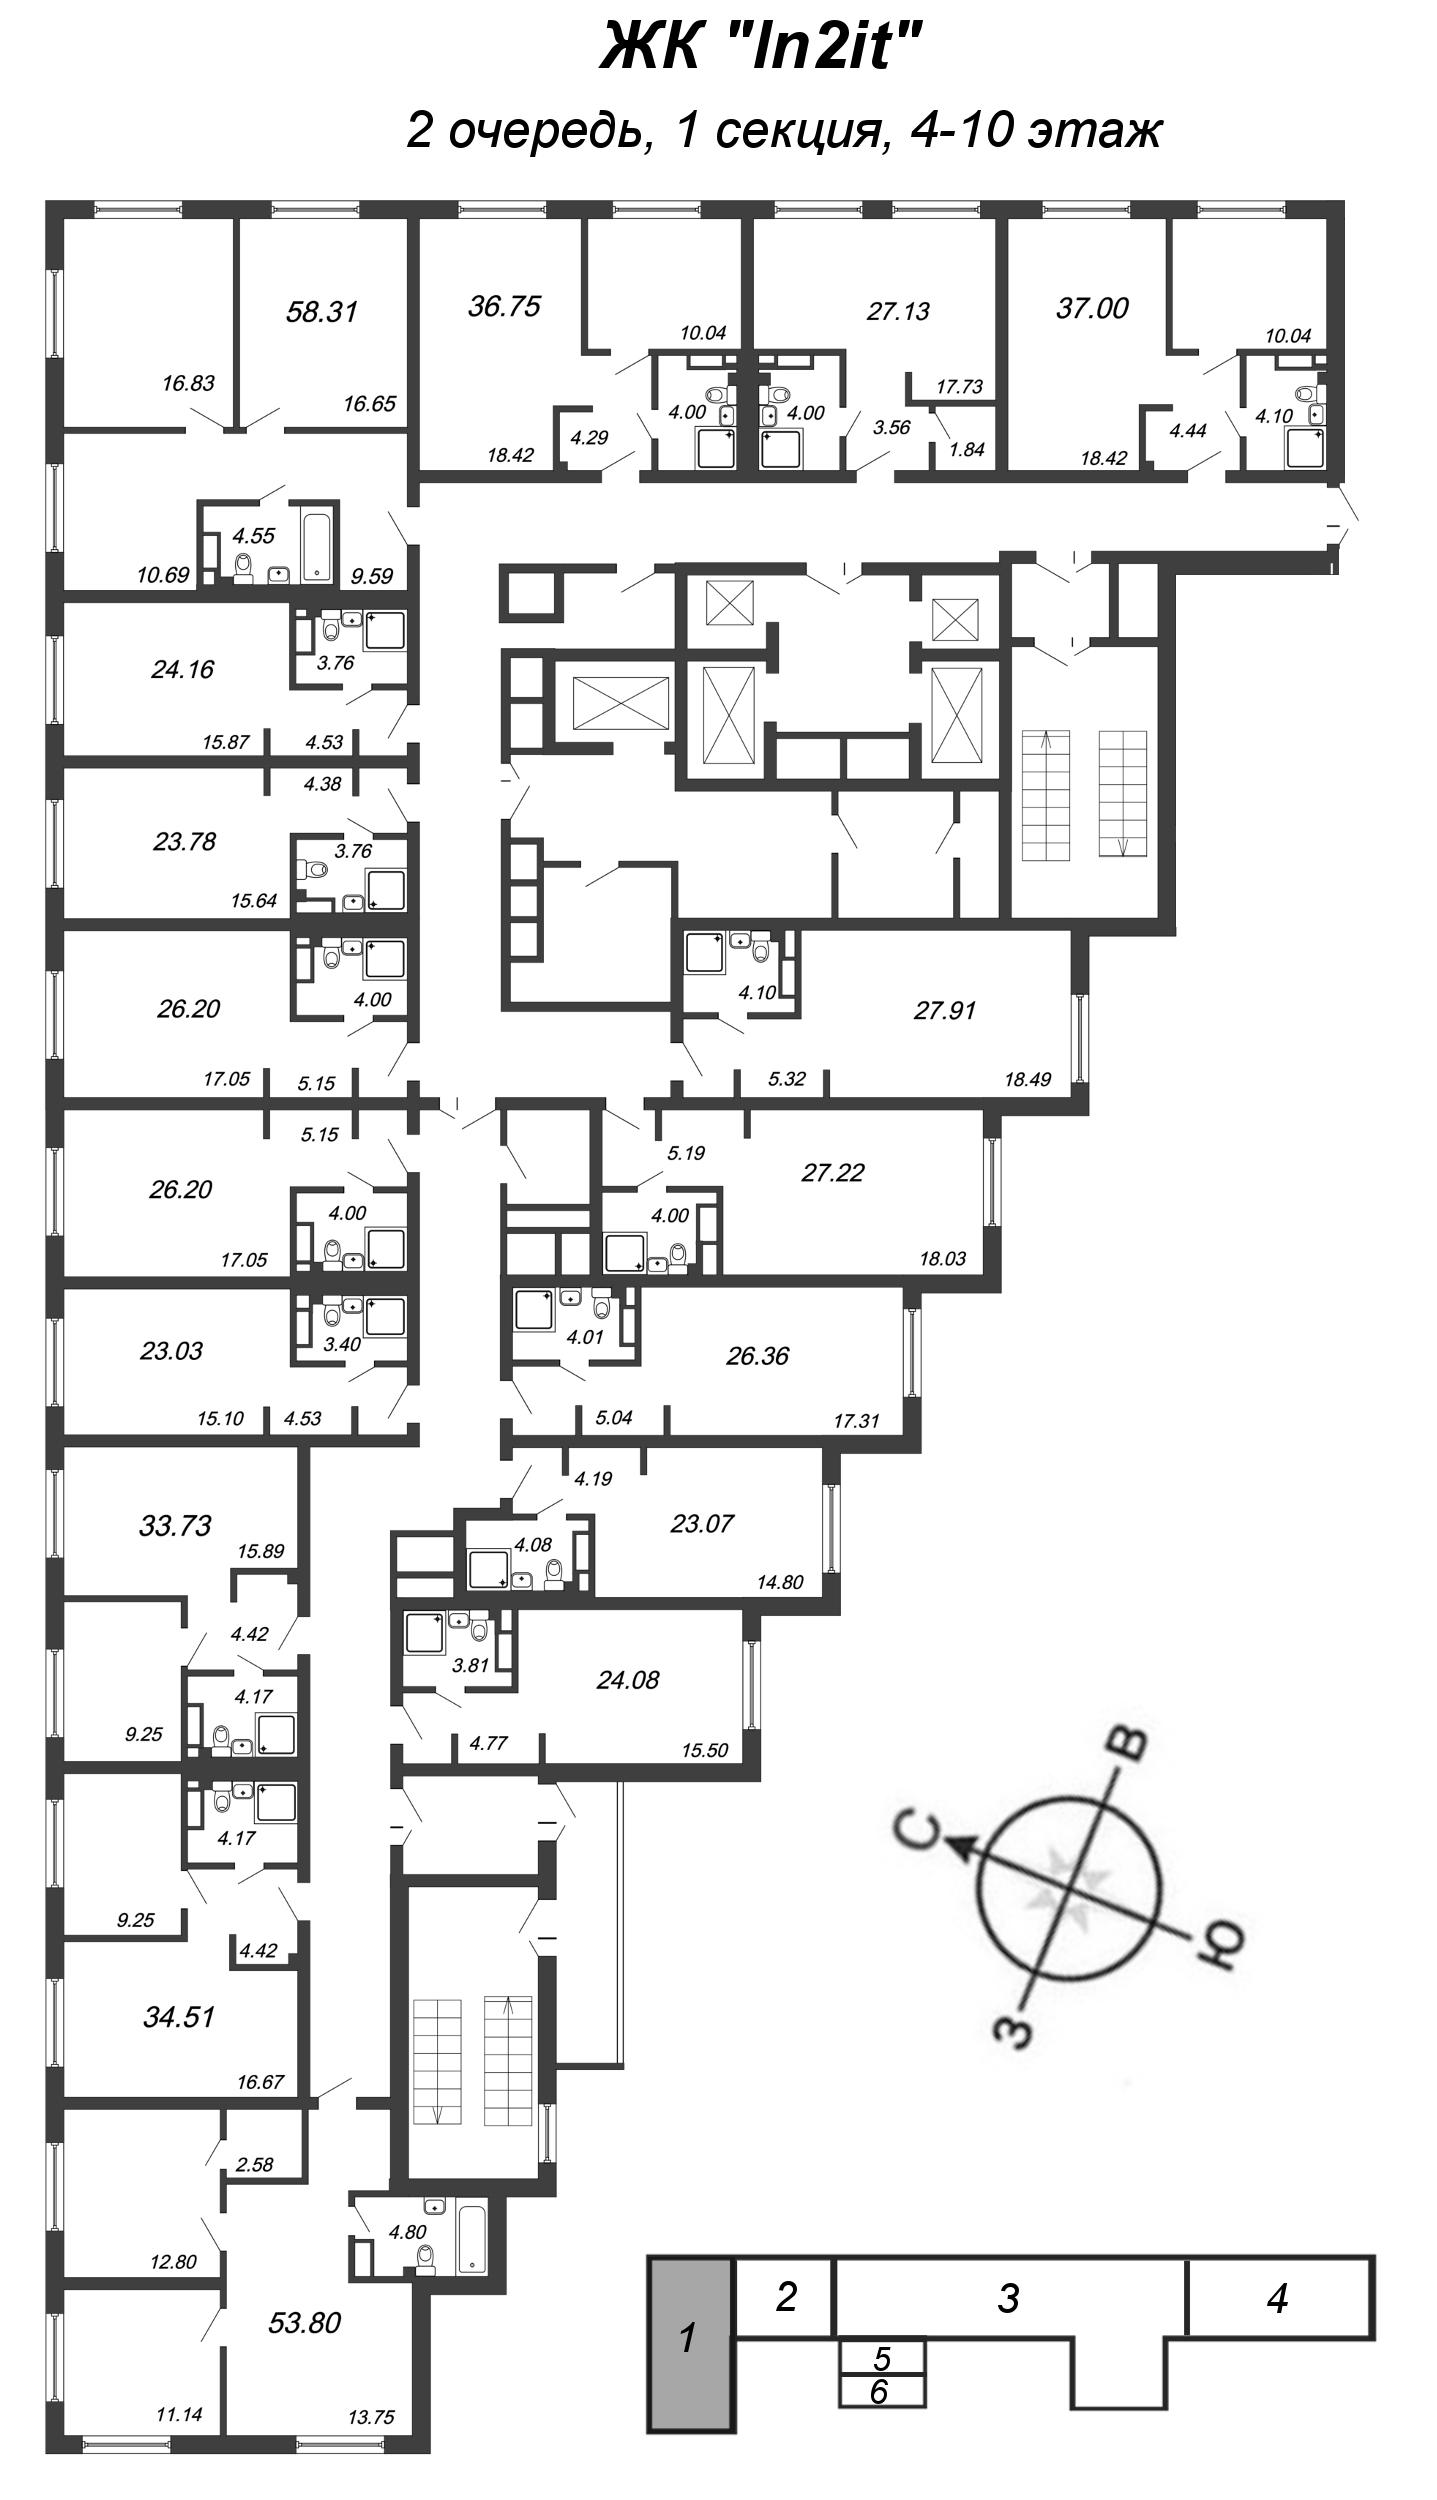 Квартира-студия, 23.78 м² в ЖК "In2it" - планировка этажа